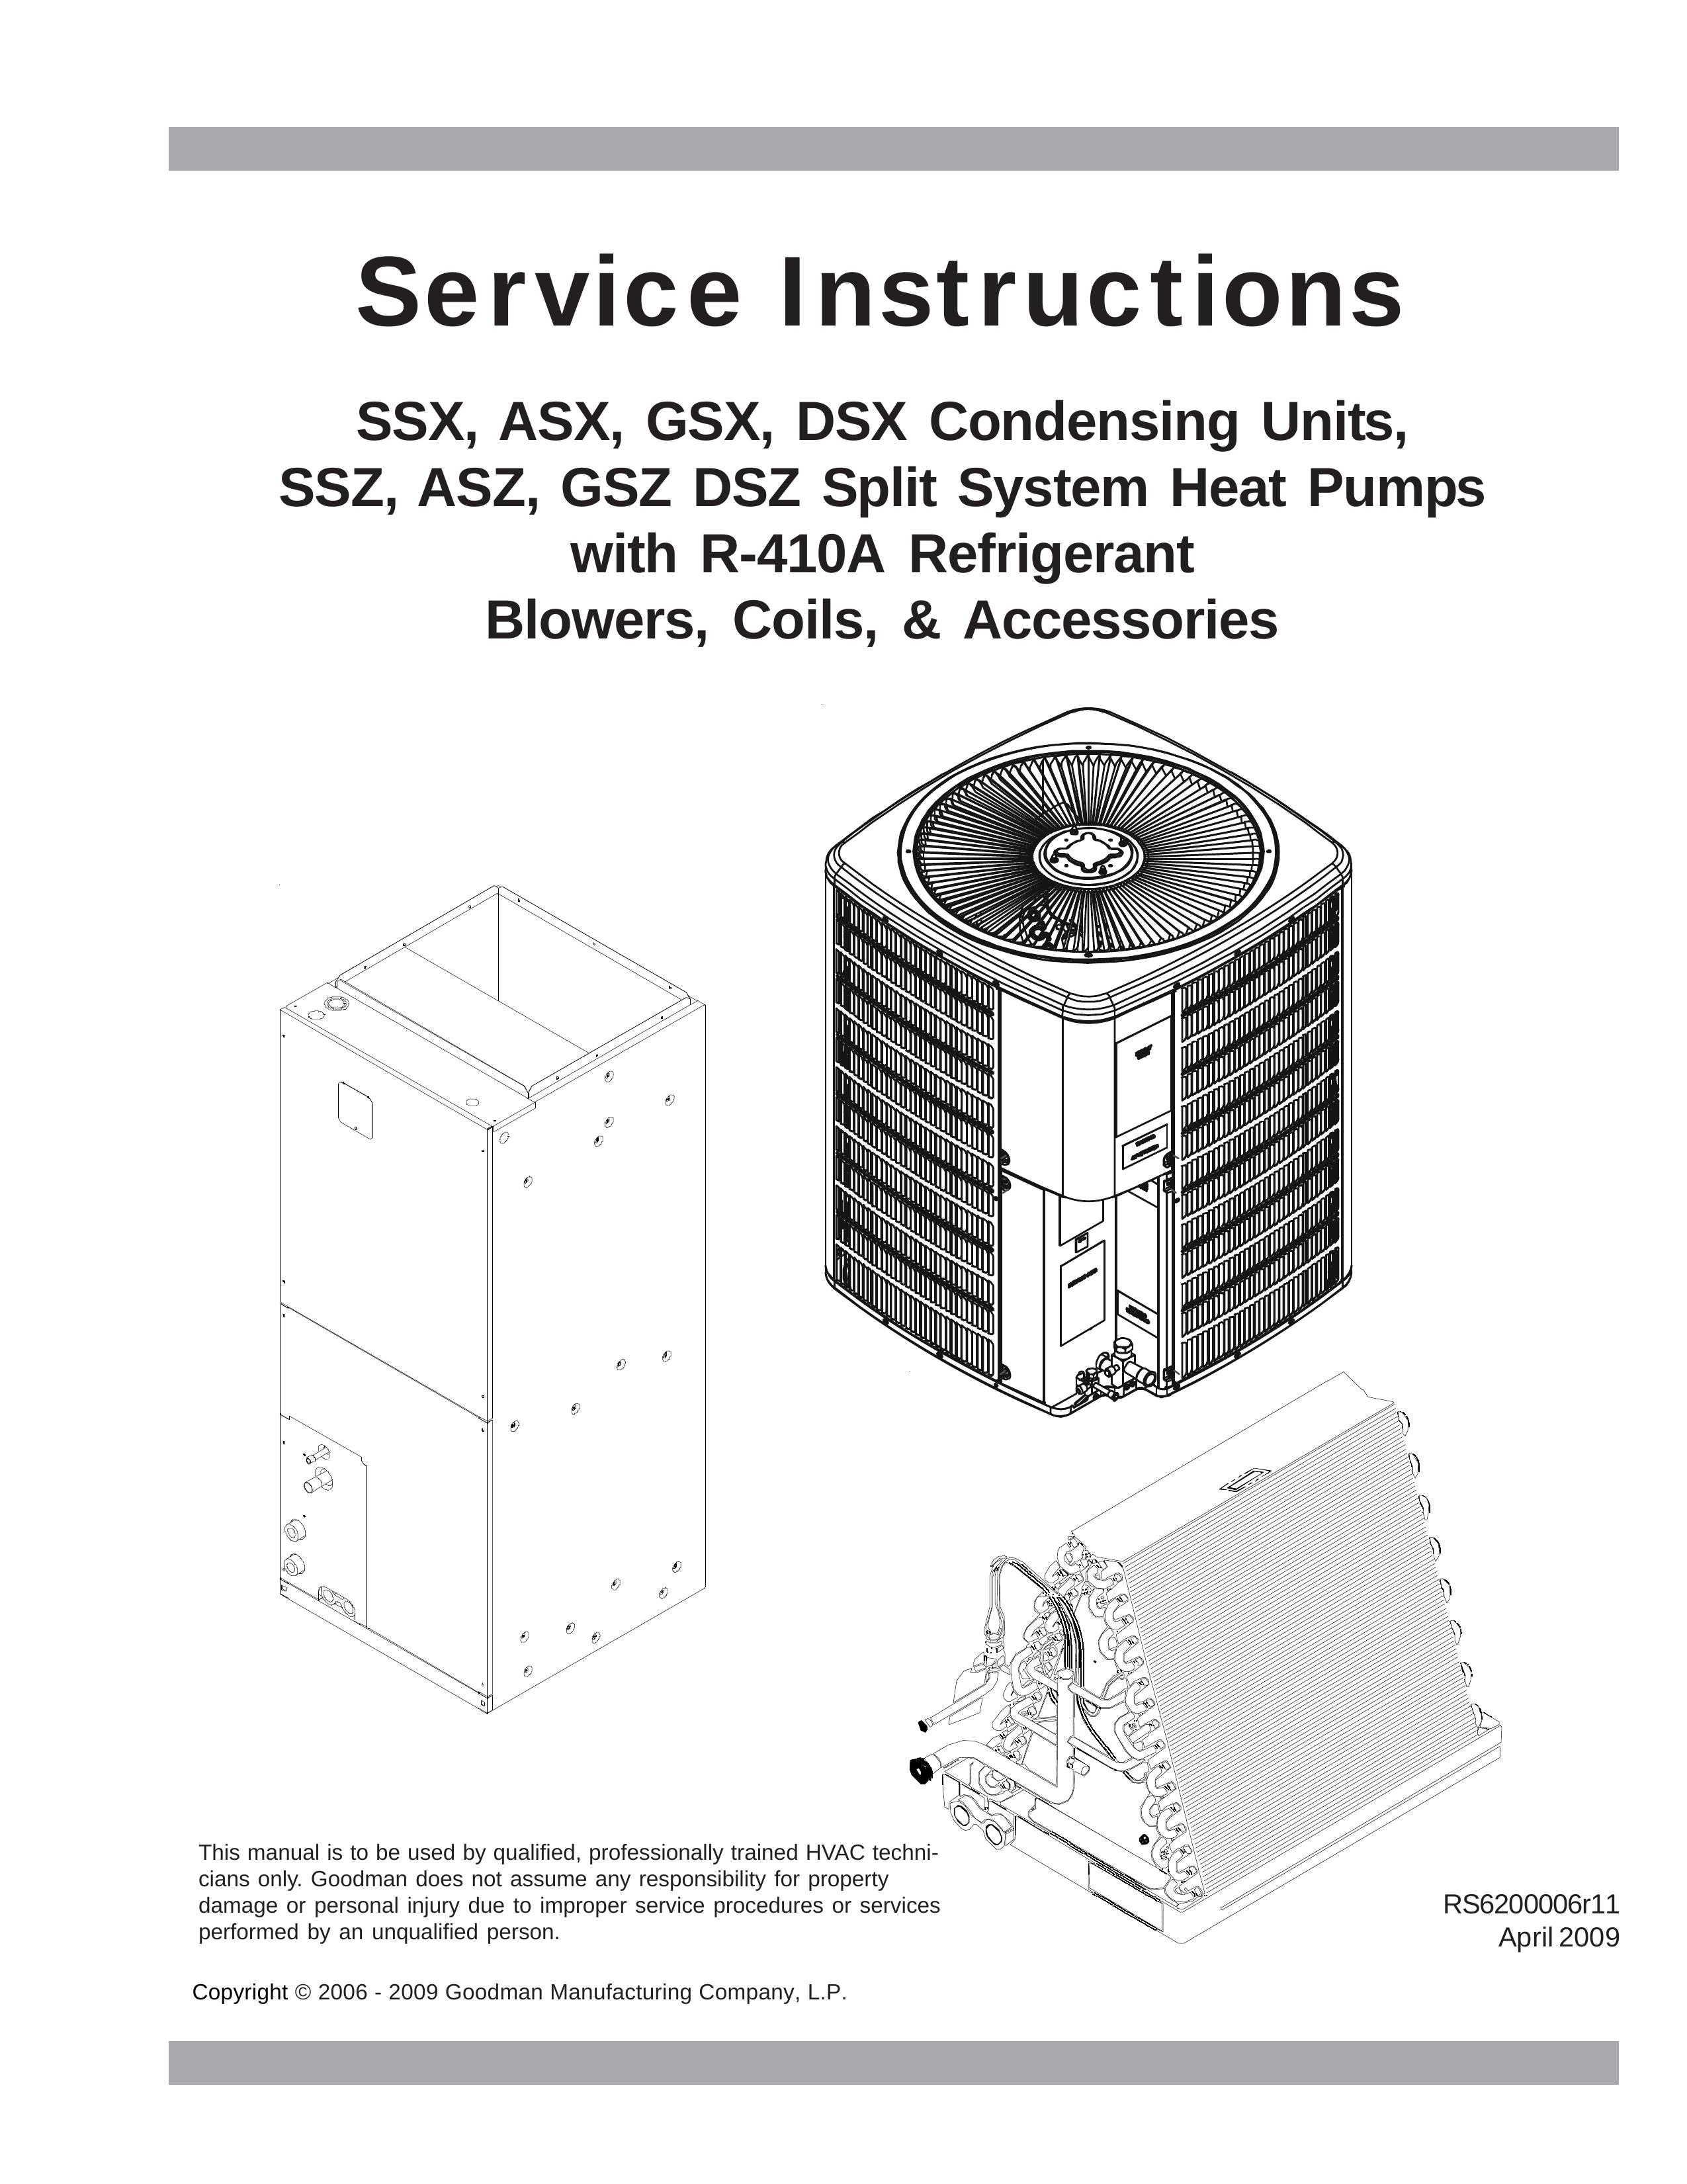 Goodmans SSZ Refrigerator User Manual